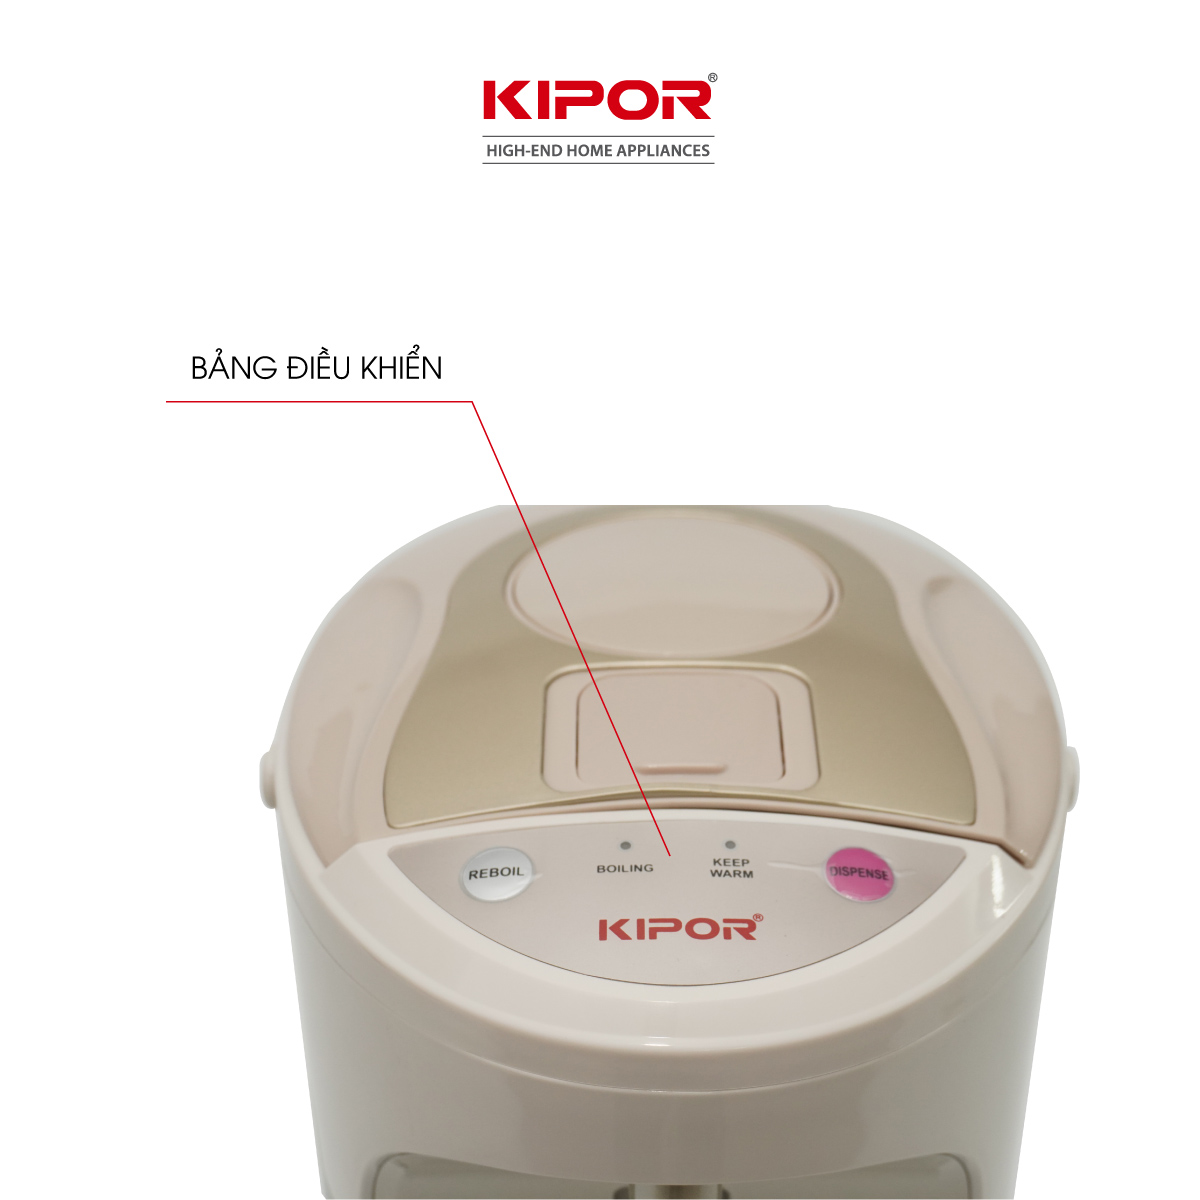 Bình thuỷ điện KIPOR KP-EP642 - 4,2L - Ruột bình inox 304 -  Đun sôi nhanh, có tay cầm, chế độ tự bật, tự ngắt, 3 chế độ lấy nước - Hàng chính hãng